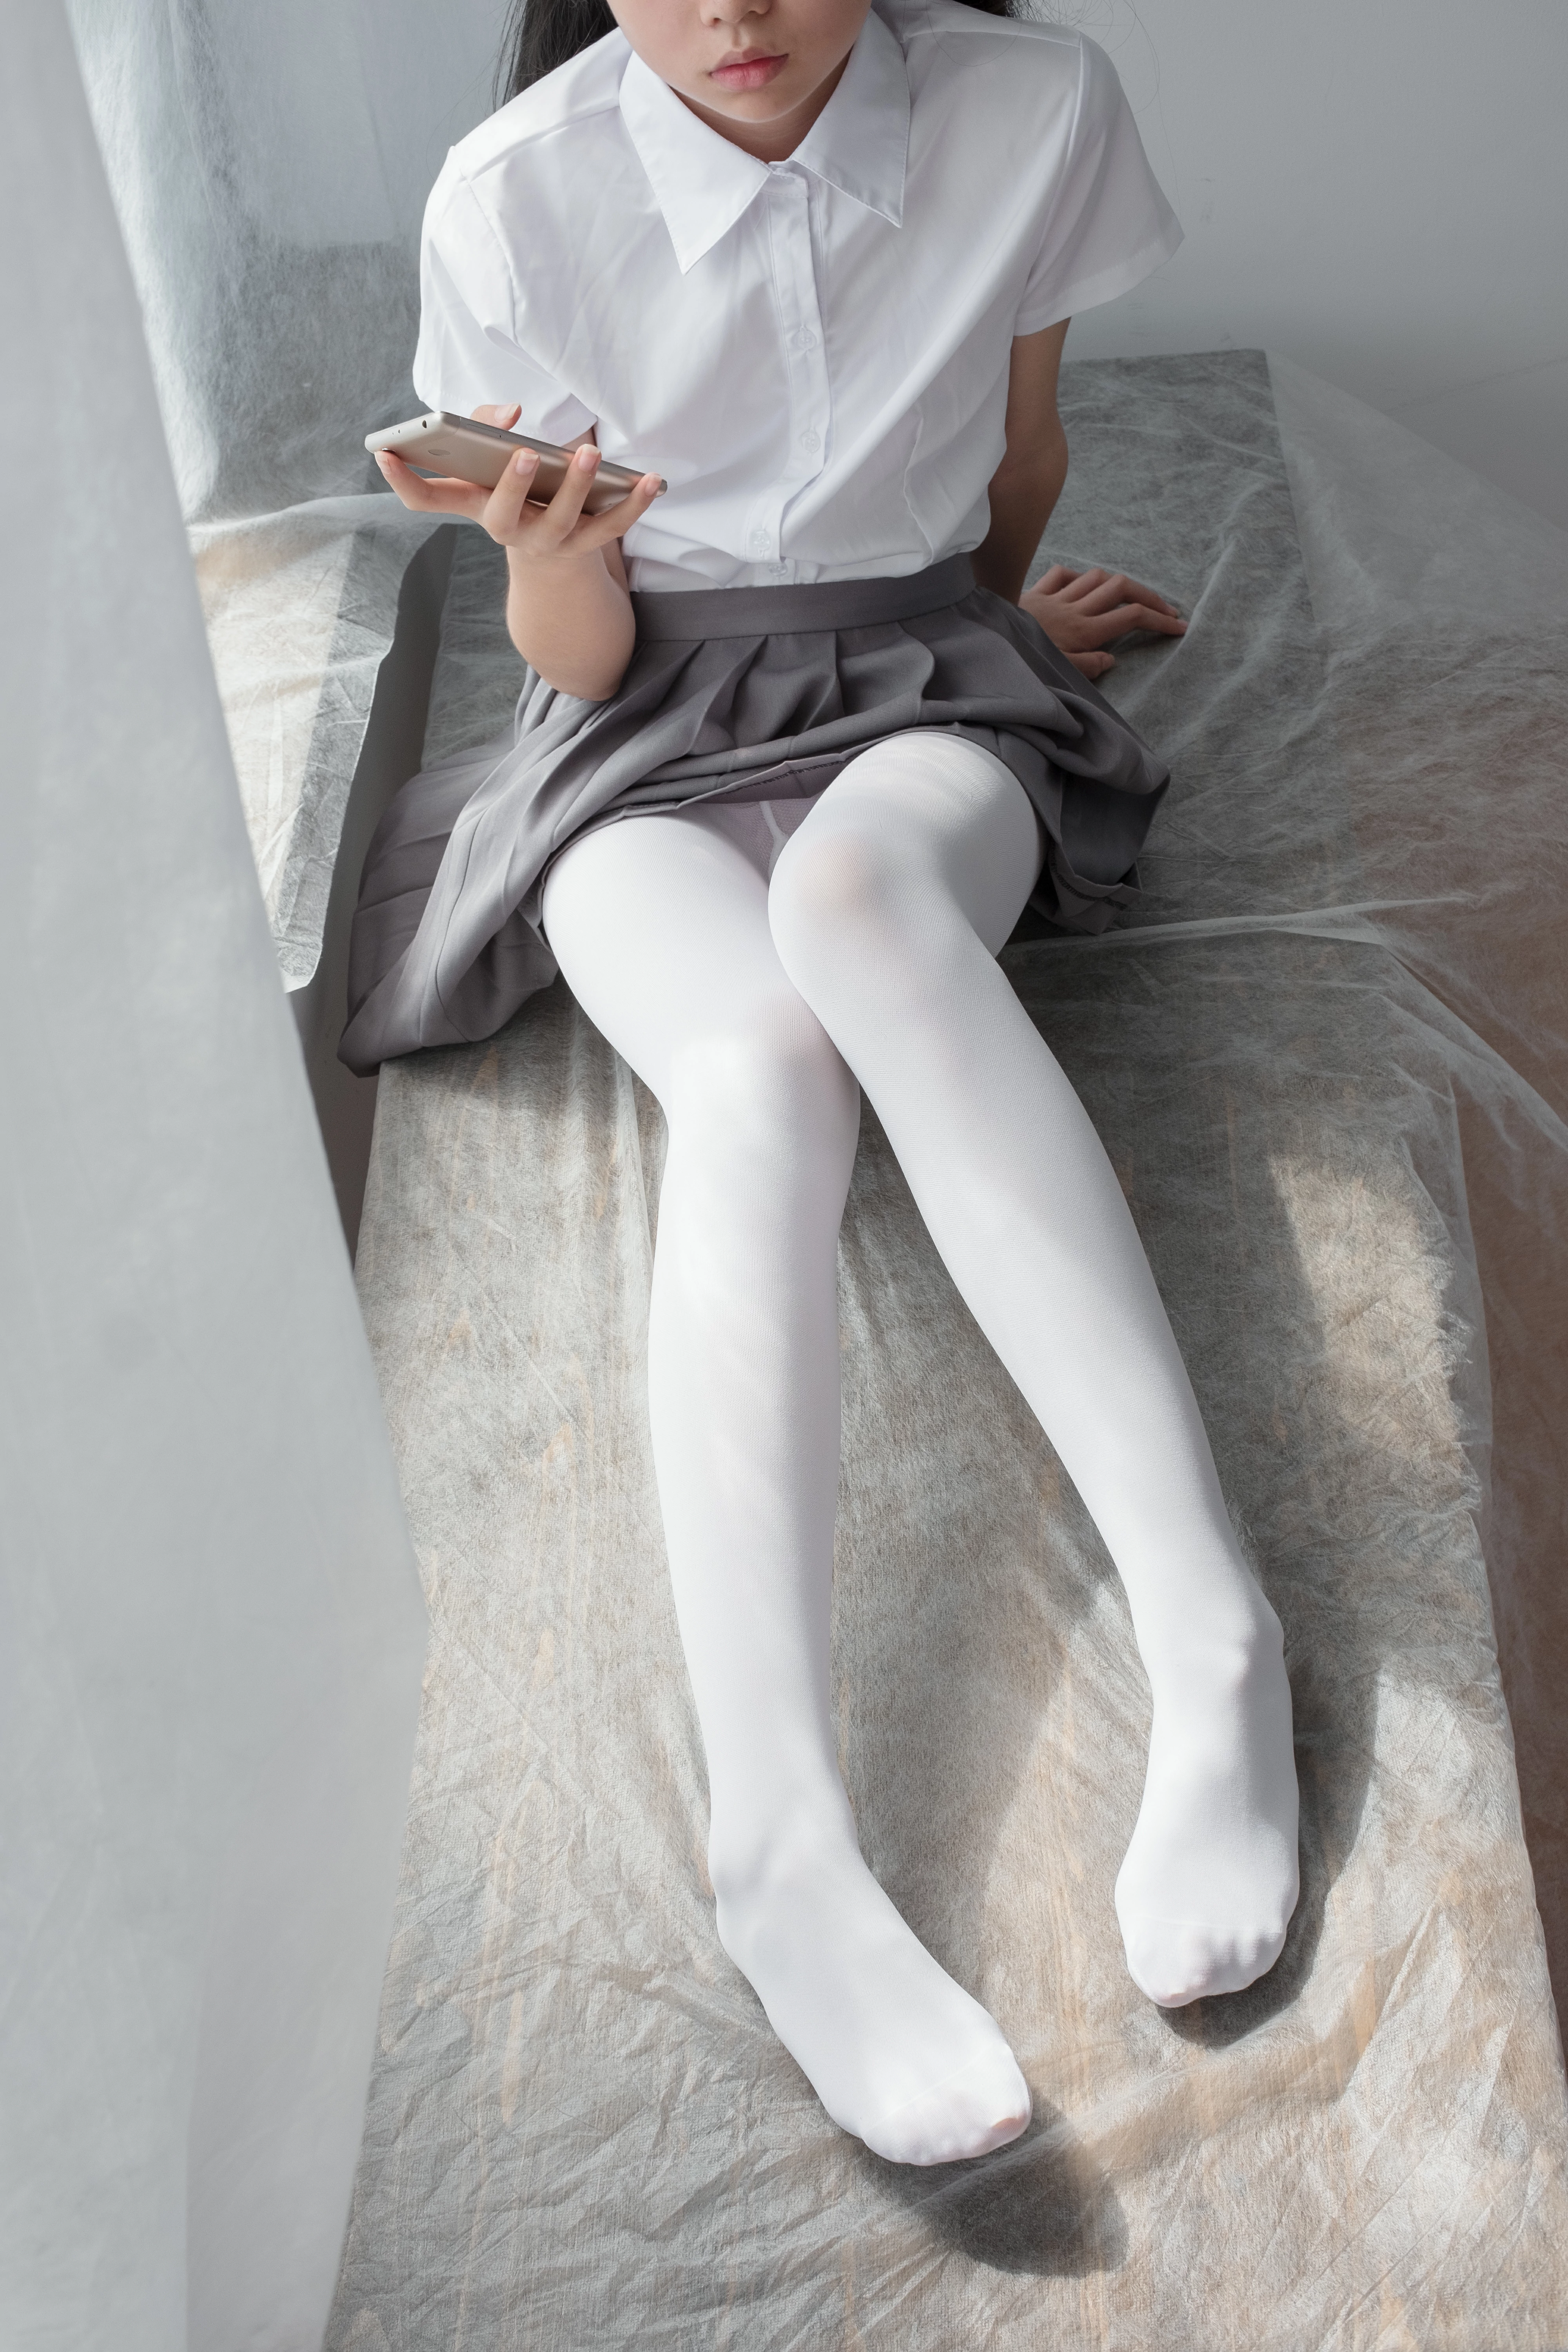 [森萝财团]BETA-029 性感学妹小萝莉 白色短袖衬衫与灰色短裙加白色丝袜美腿私房写真集,